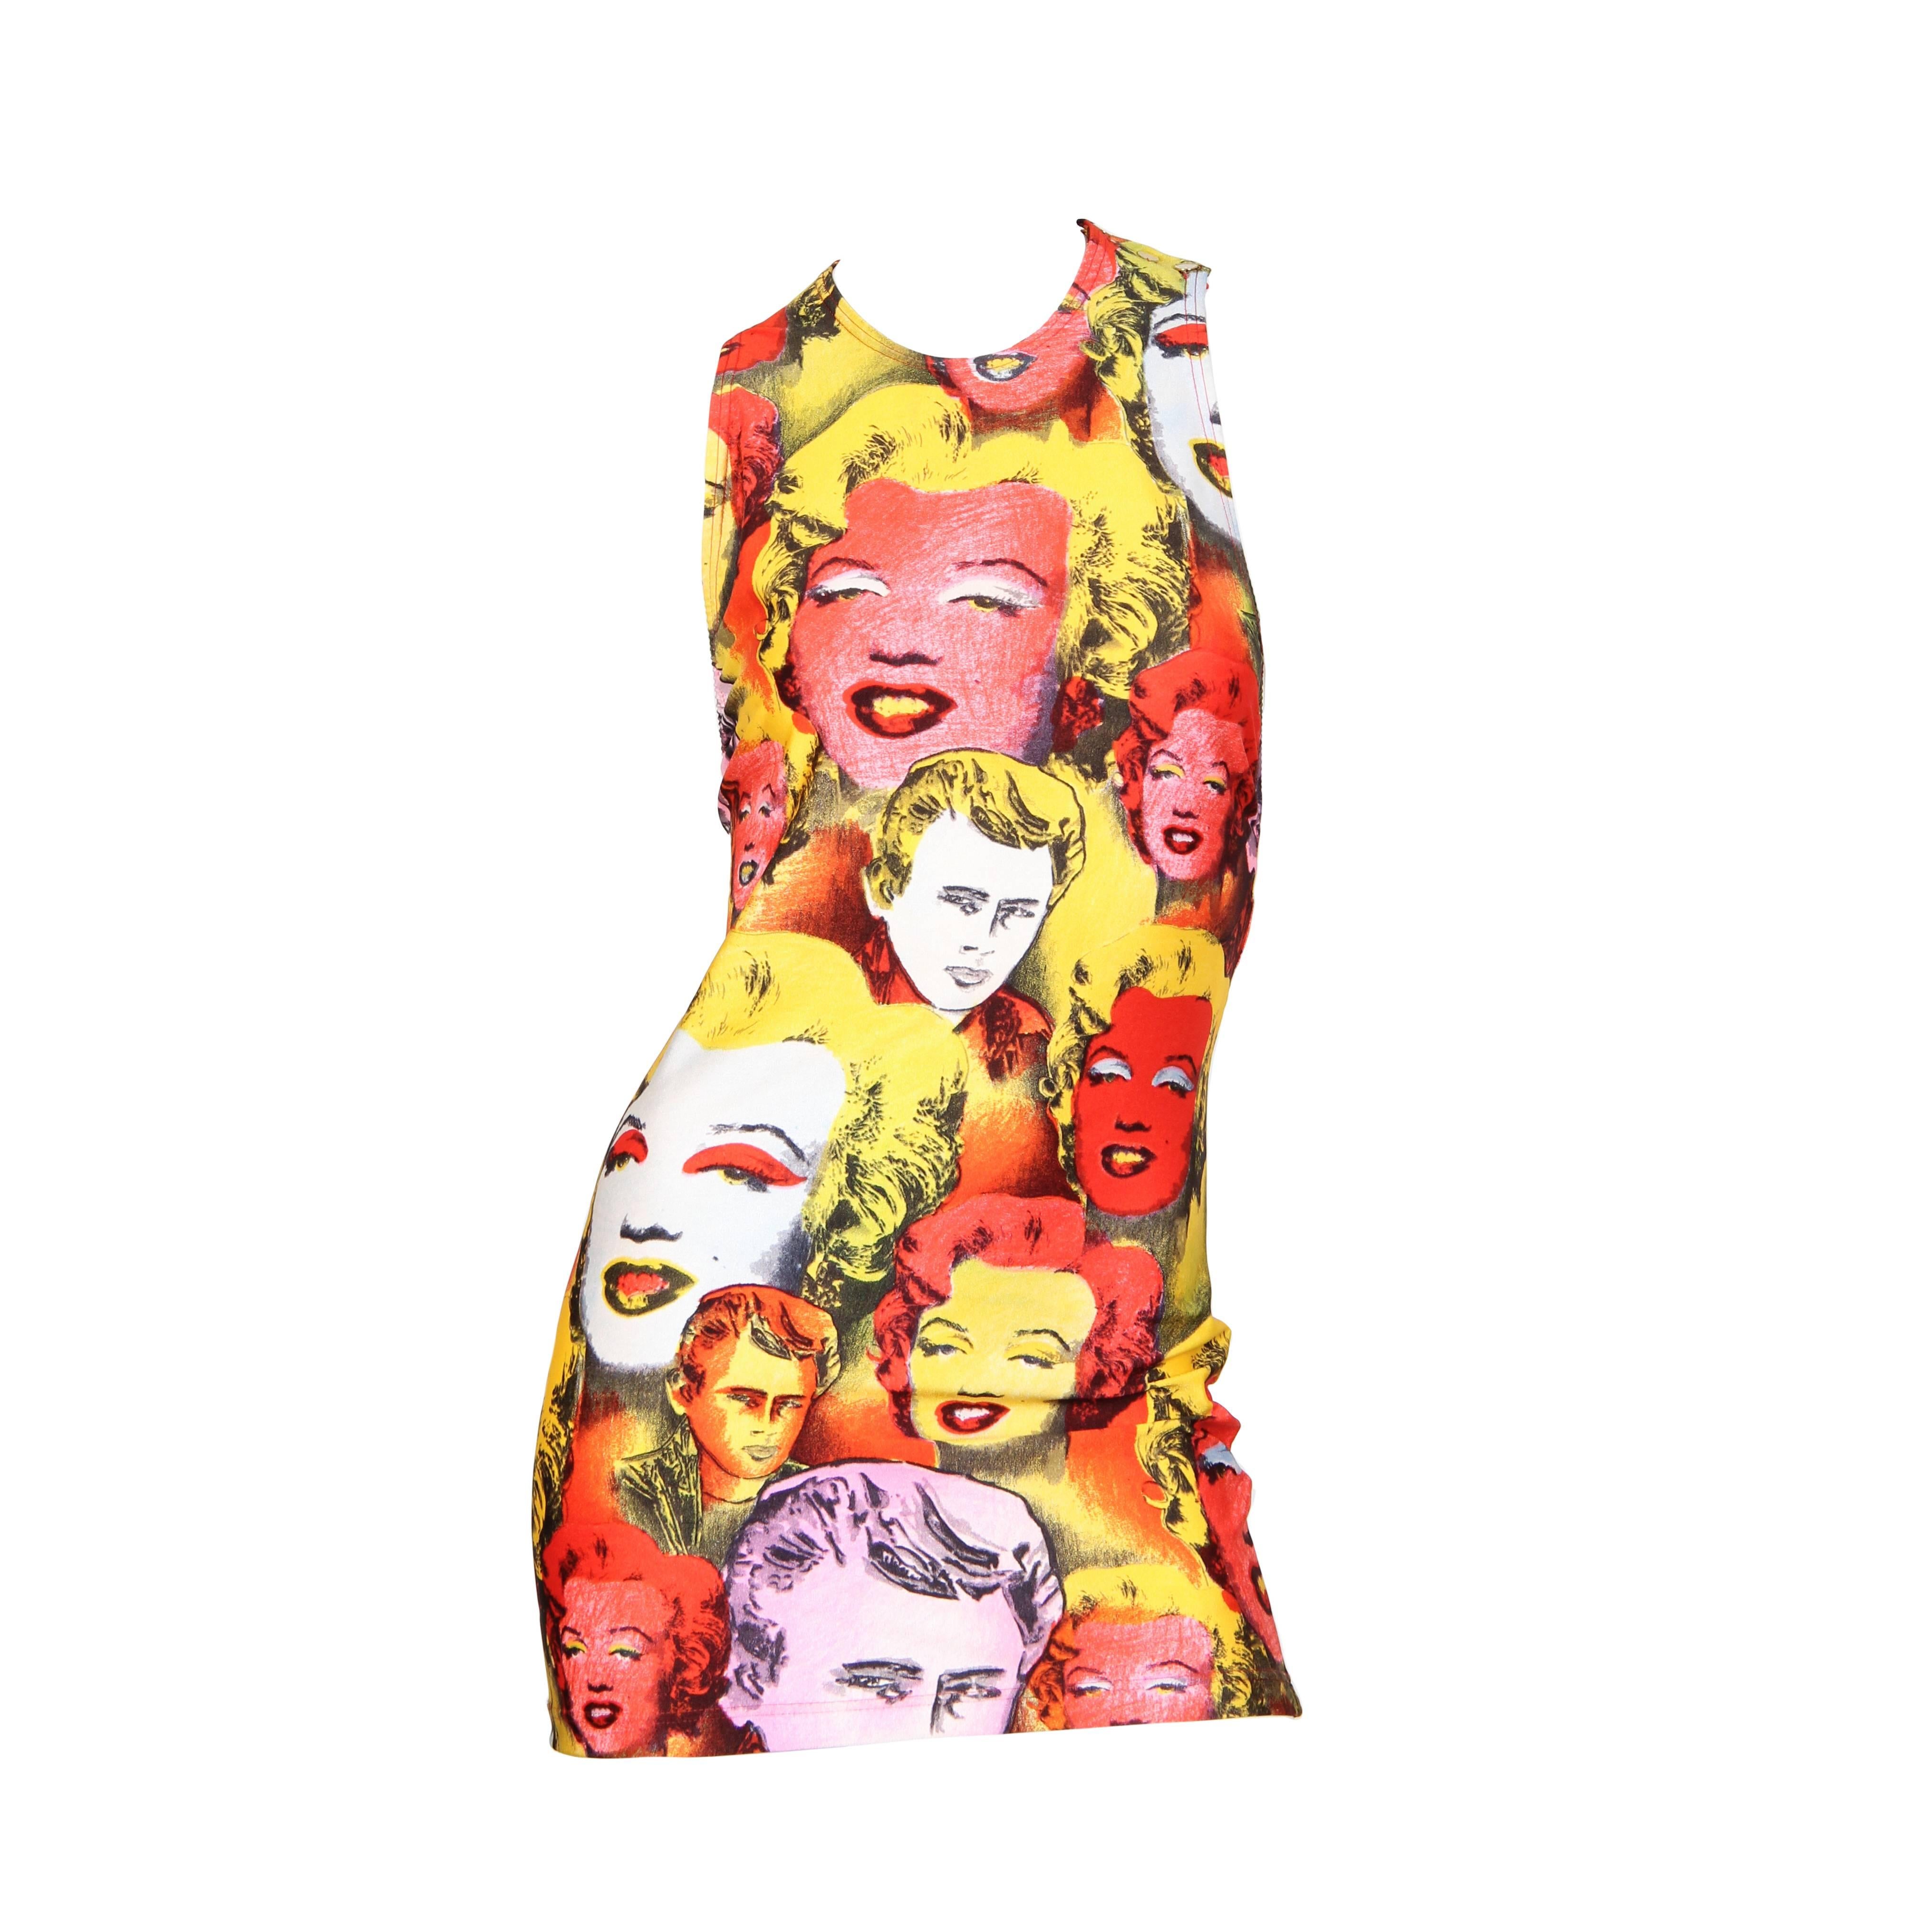 GIANNI VERSACE Nouveauté emblématique en jersey polyester/lycra rouge et jaune, Marilyn Monroe, années 1990